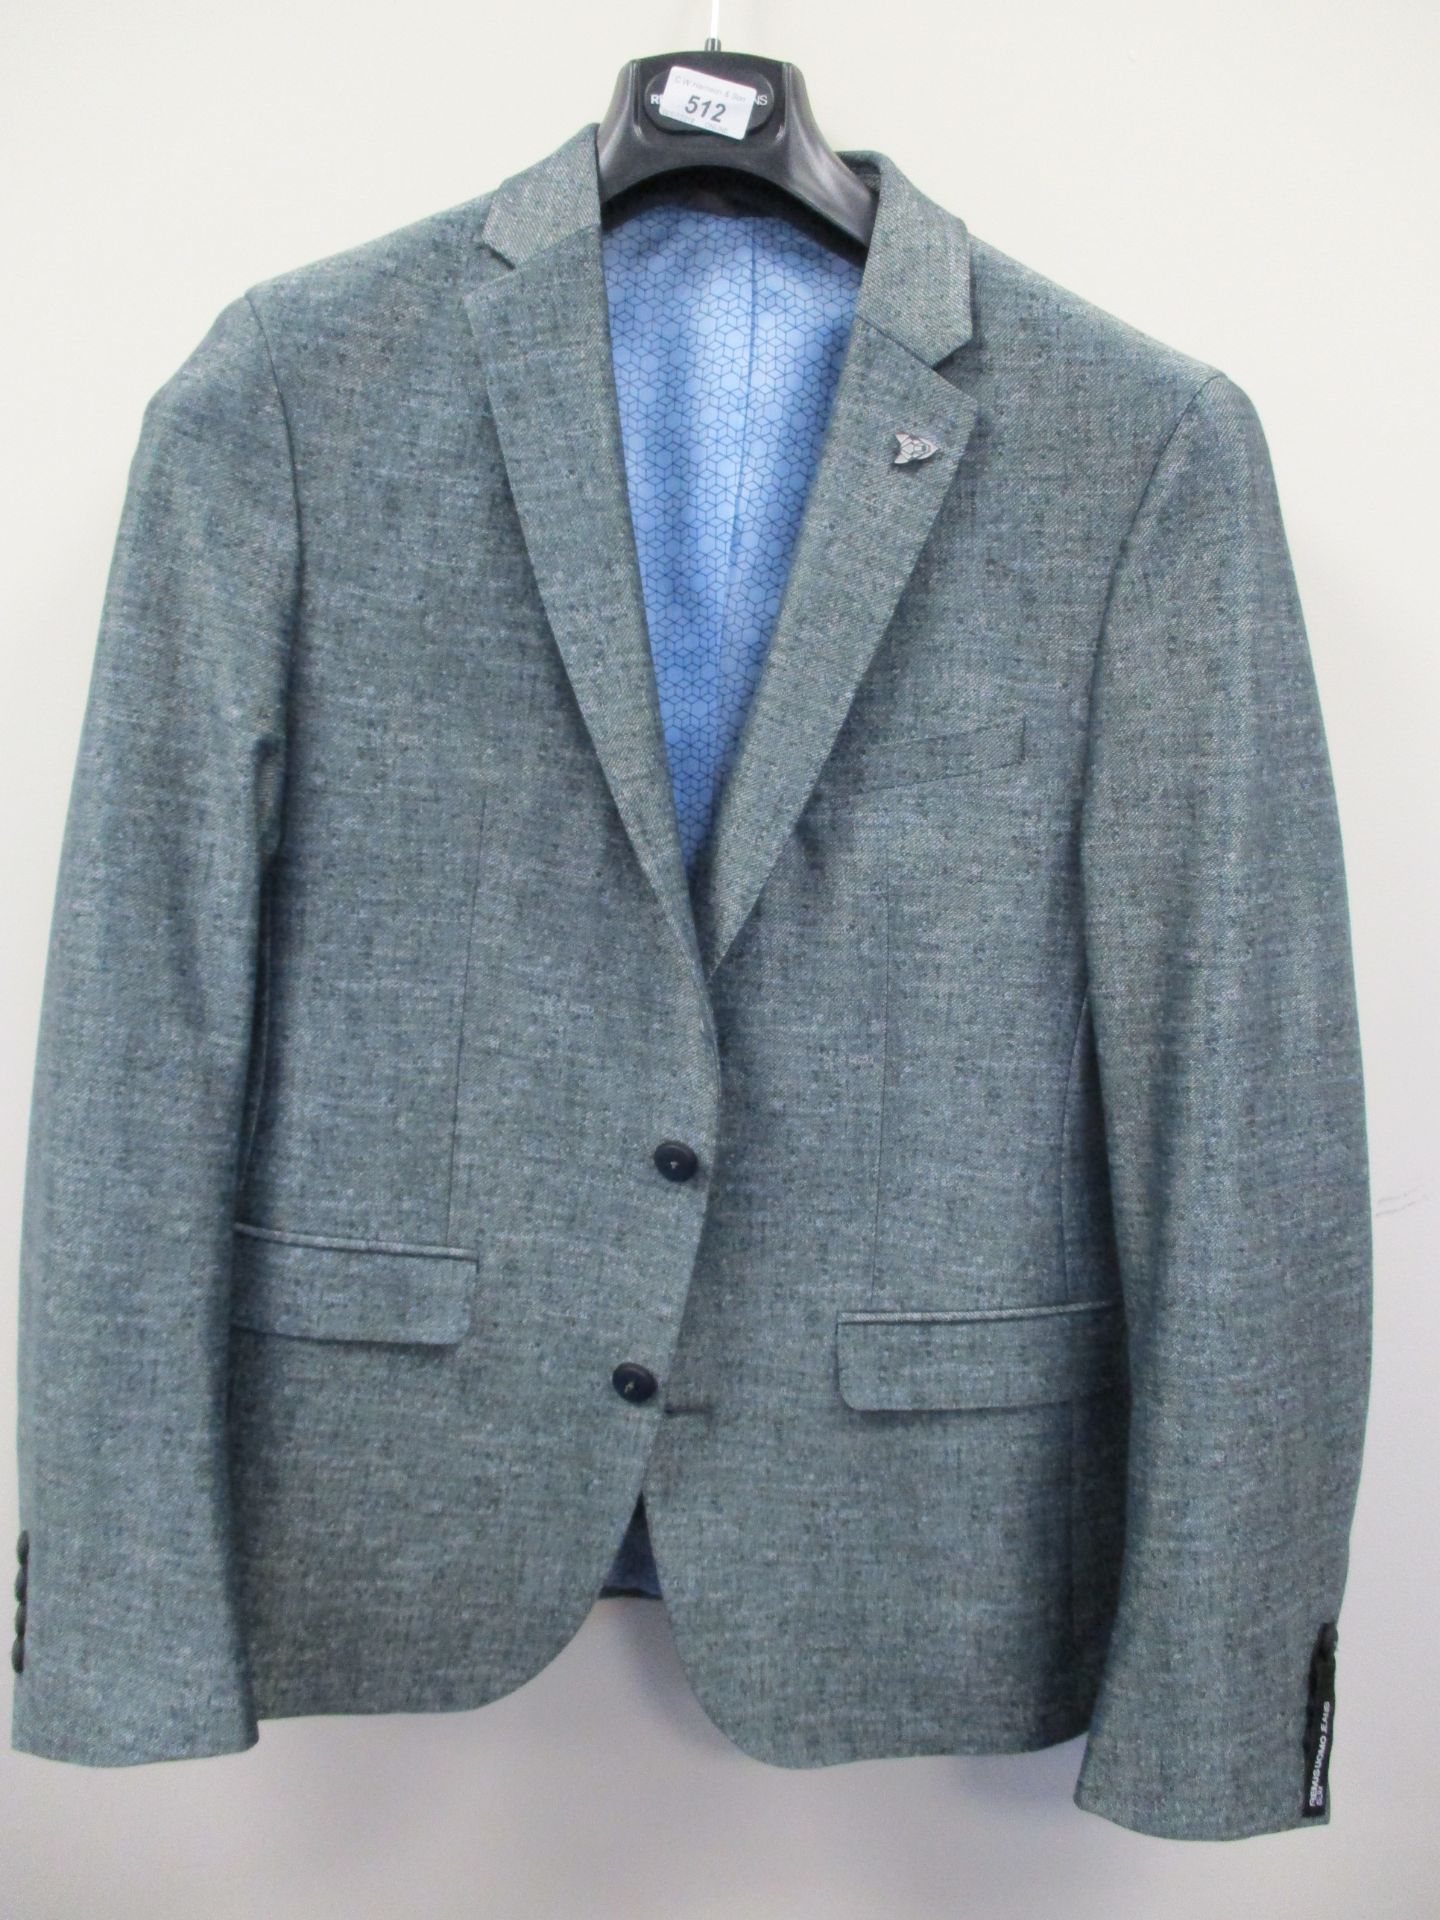 Remus Uomo suit jacket - green - 40" RRP £225